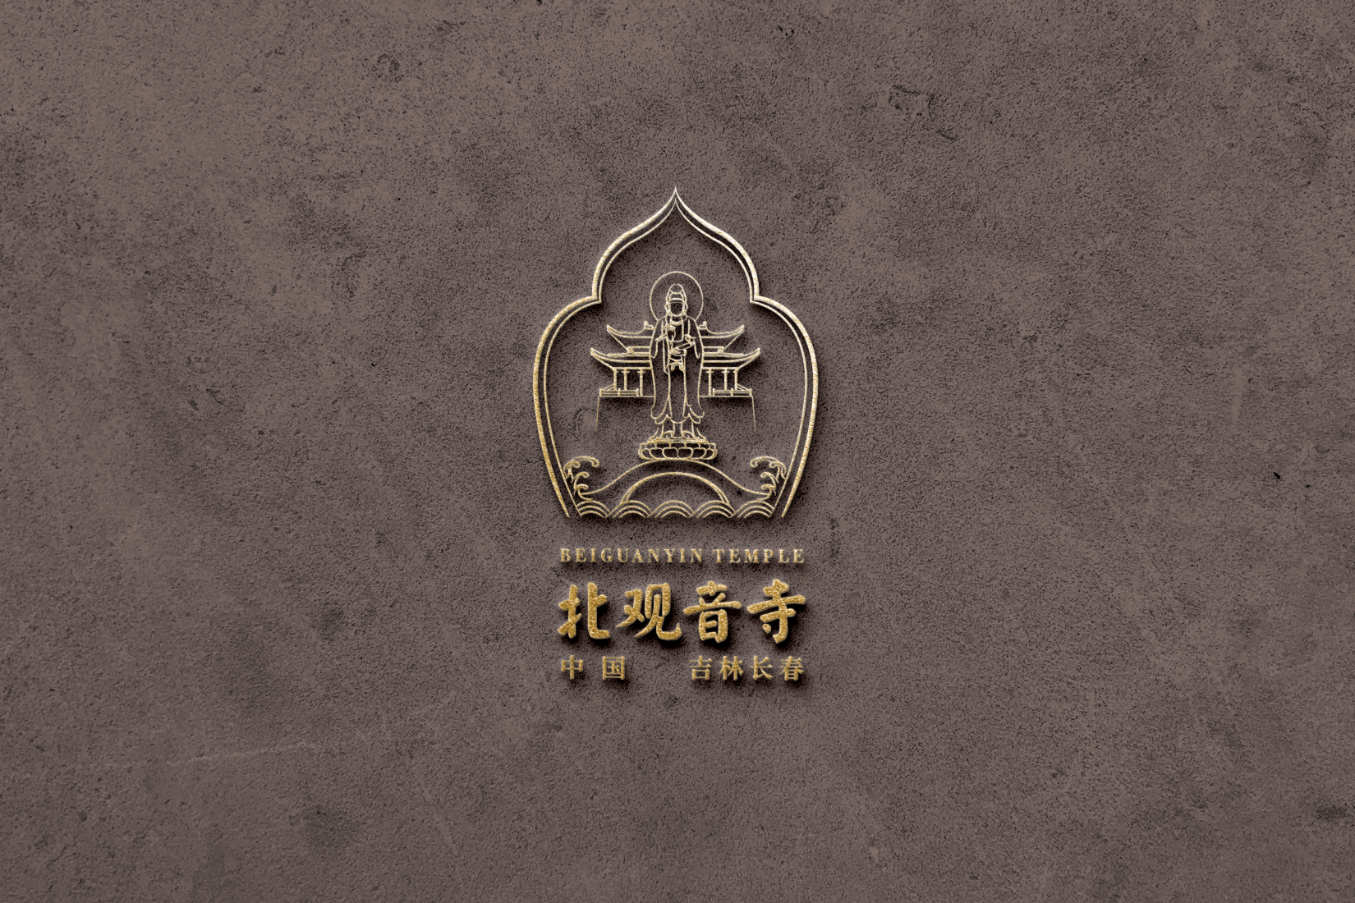 吉林长春北观音寺logo设计